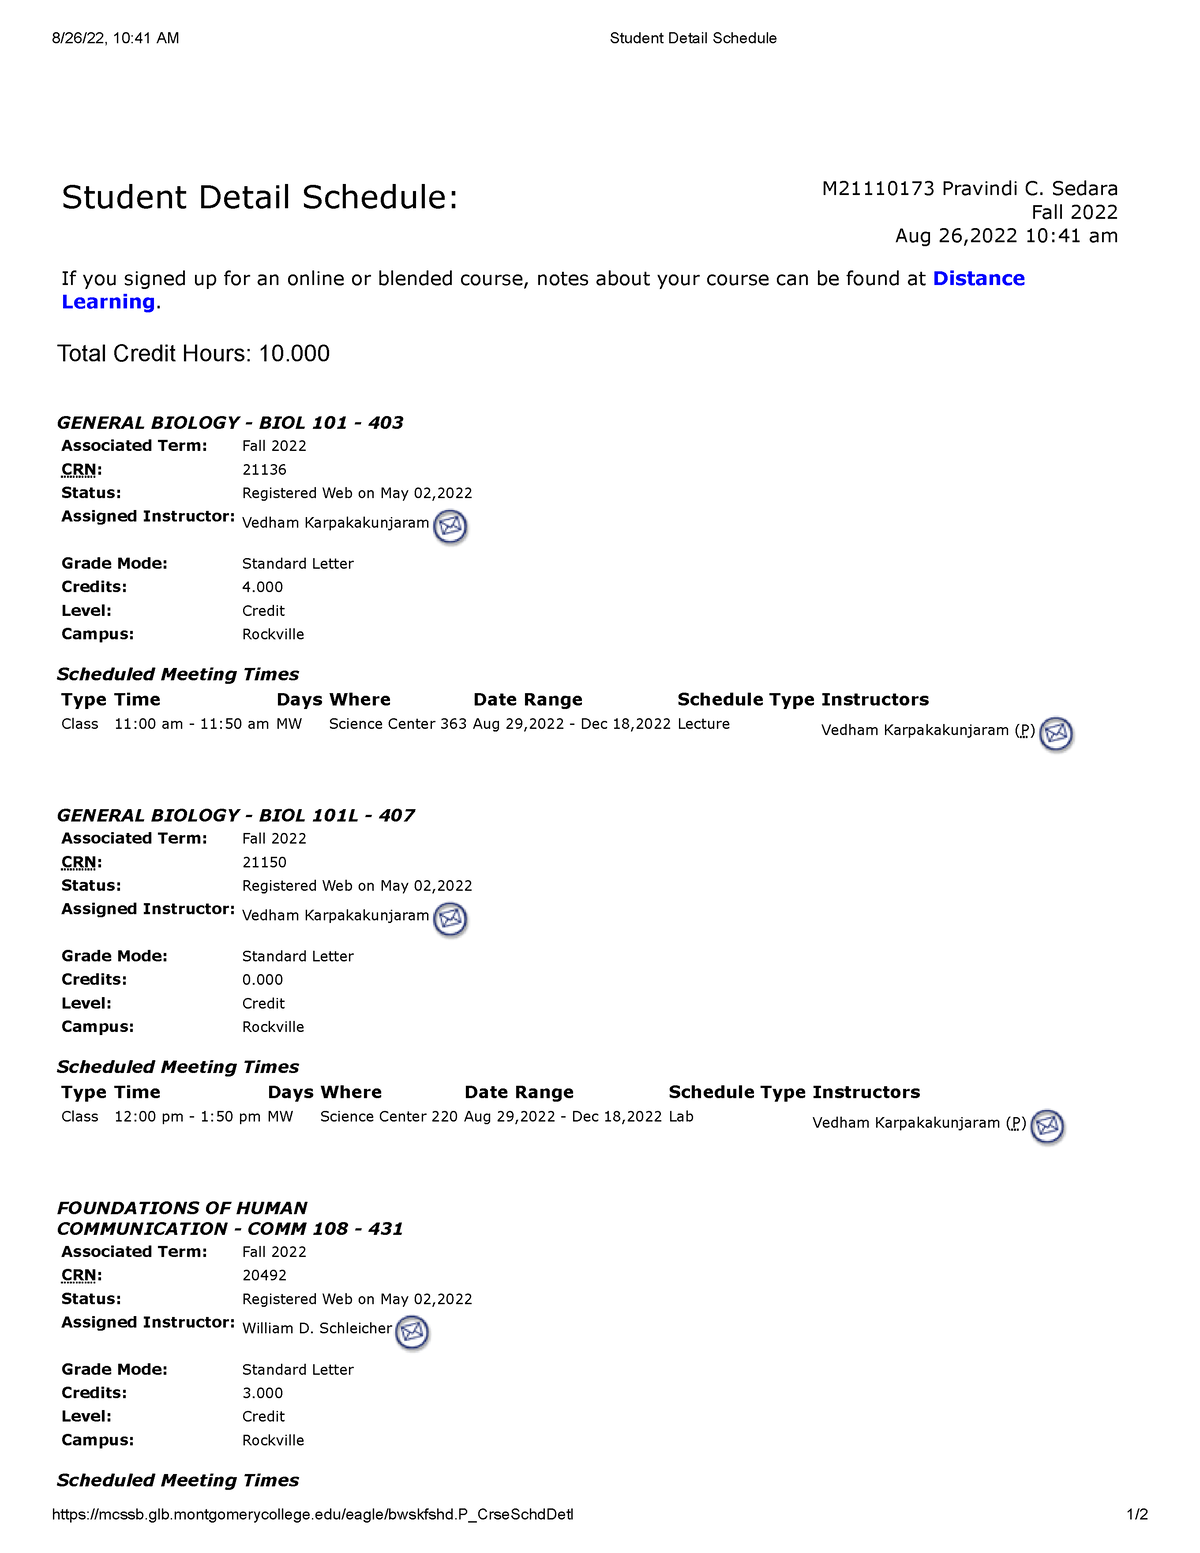 Student Detail Schedule Montgomery College 6 8/26/22, 1041